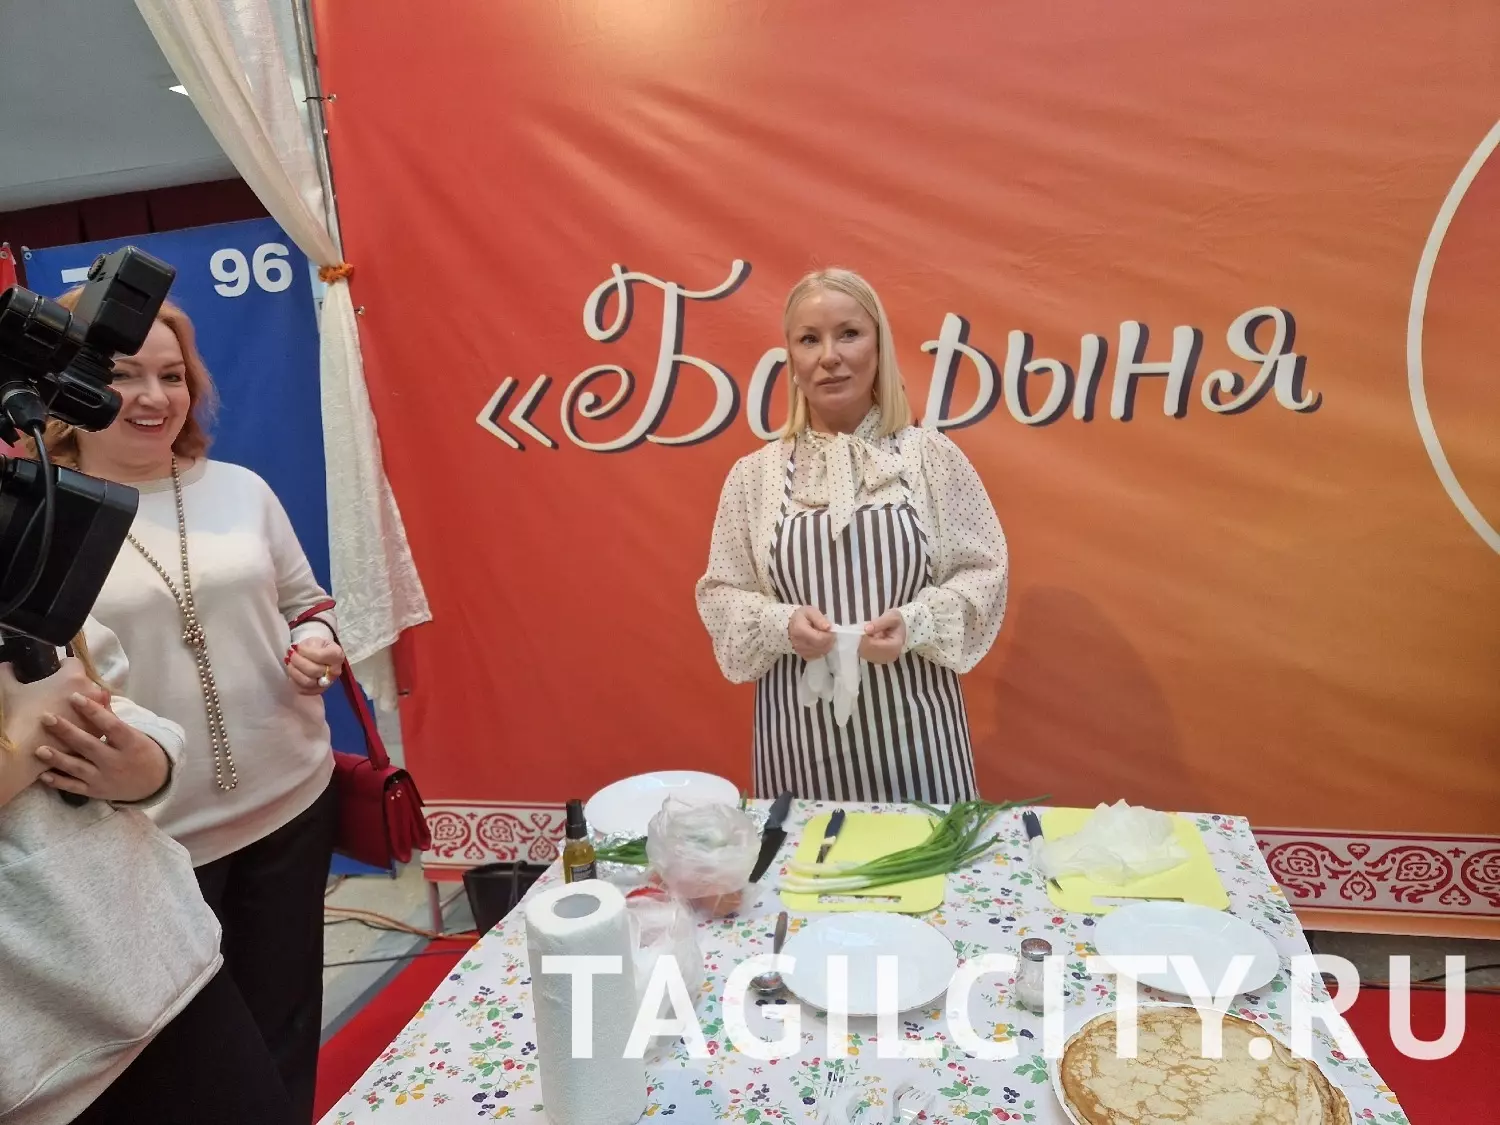 Мастер-класс по приготовлению блюд из блинов от организаторов фестиваля "Боярыня Масленица" в Нижнем Тагиле.